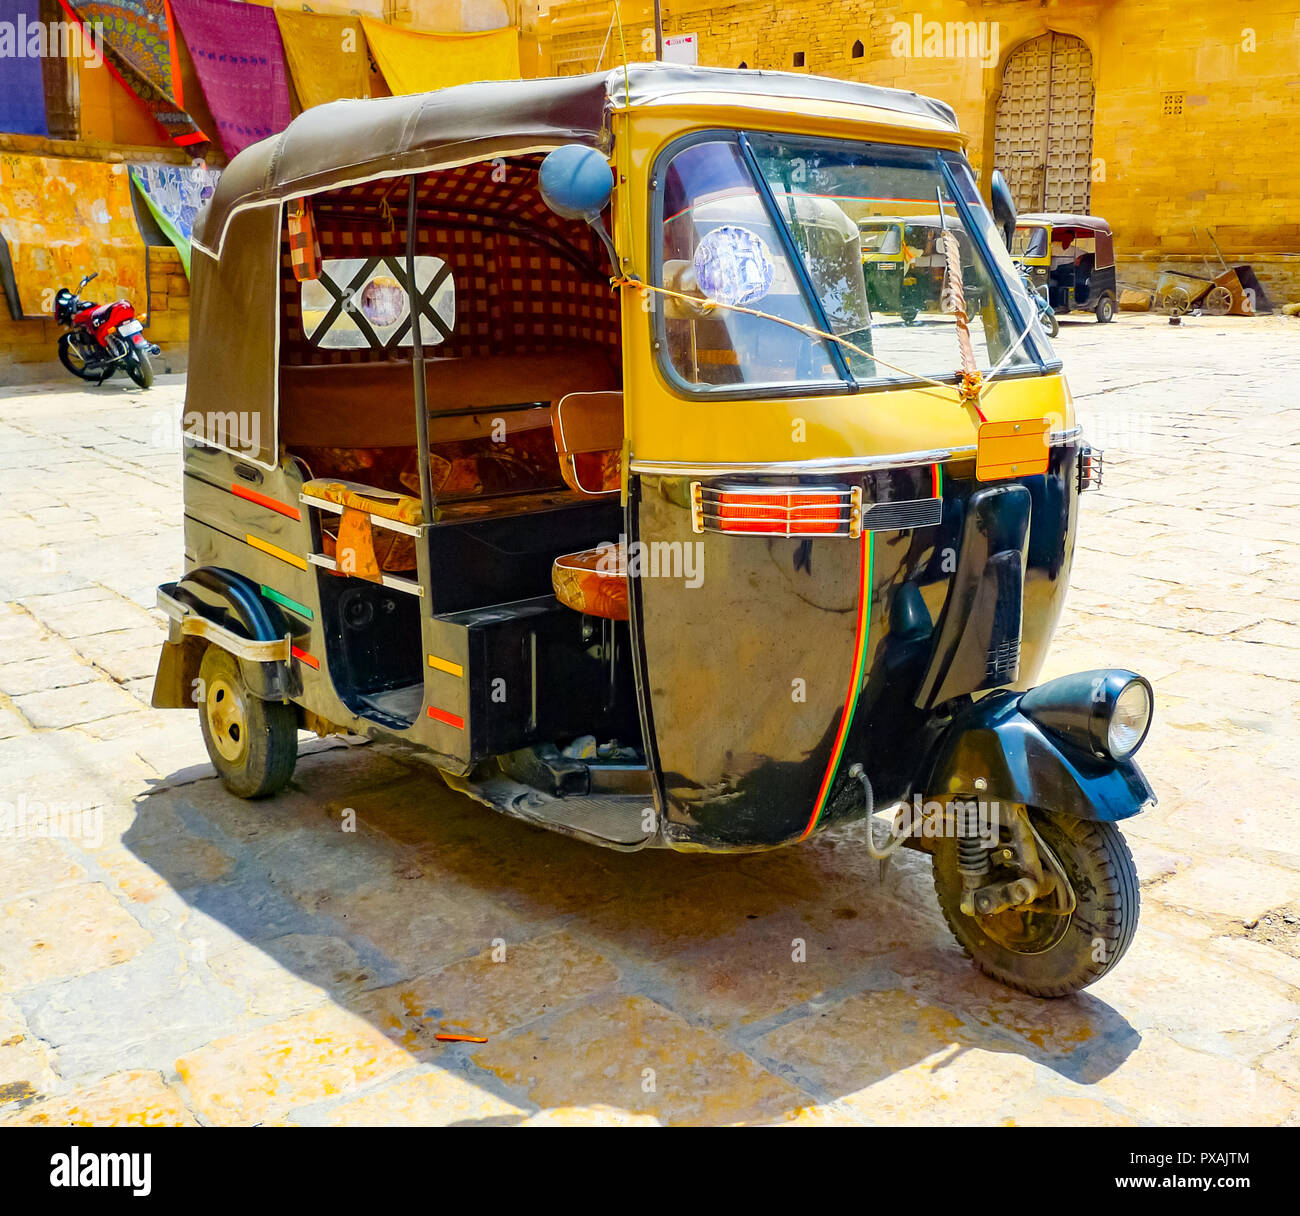 Volver tradicional y amarillo en un rickshaw motorizado plaza Jaisalmer, Rajasthan, India Foto de stock